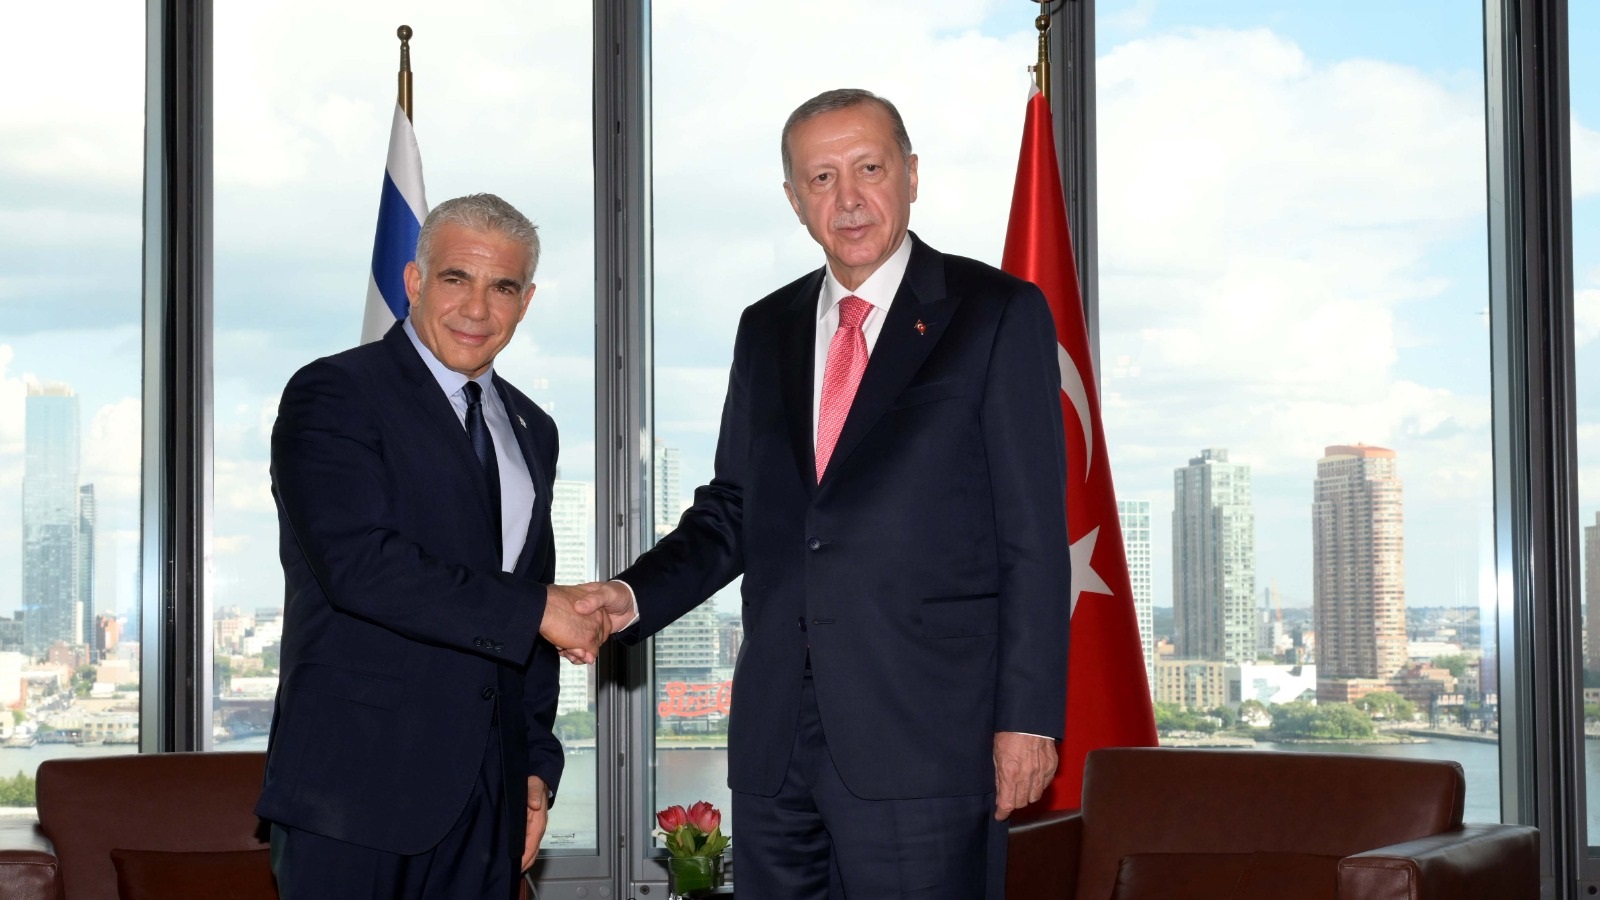 Lapid, Erdoğan Hold 1st Meeting in 14 Years Between Israeli PM, Turkish President